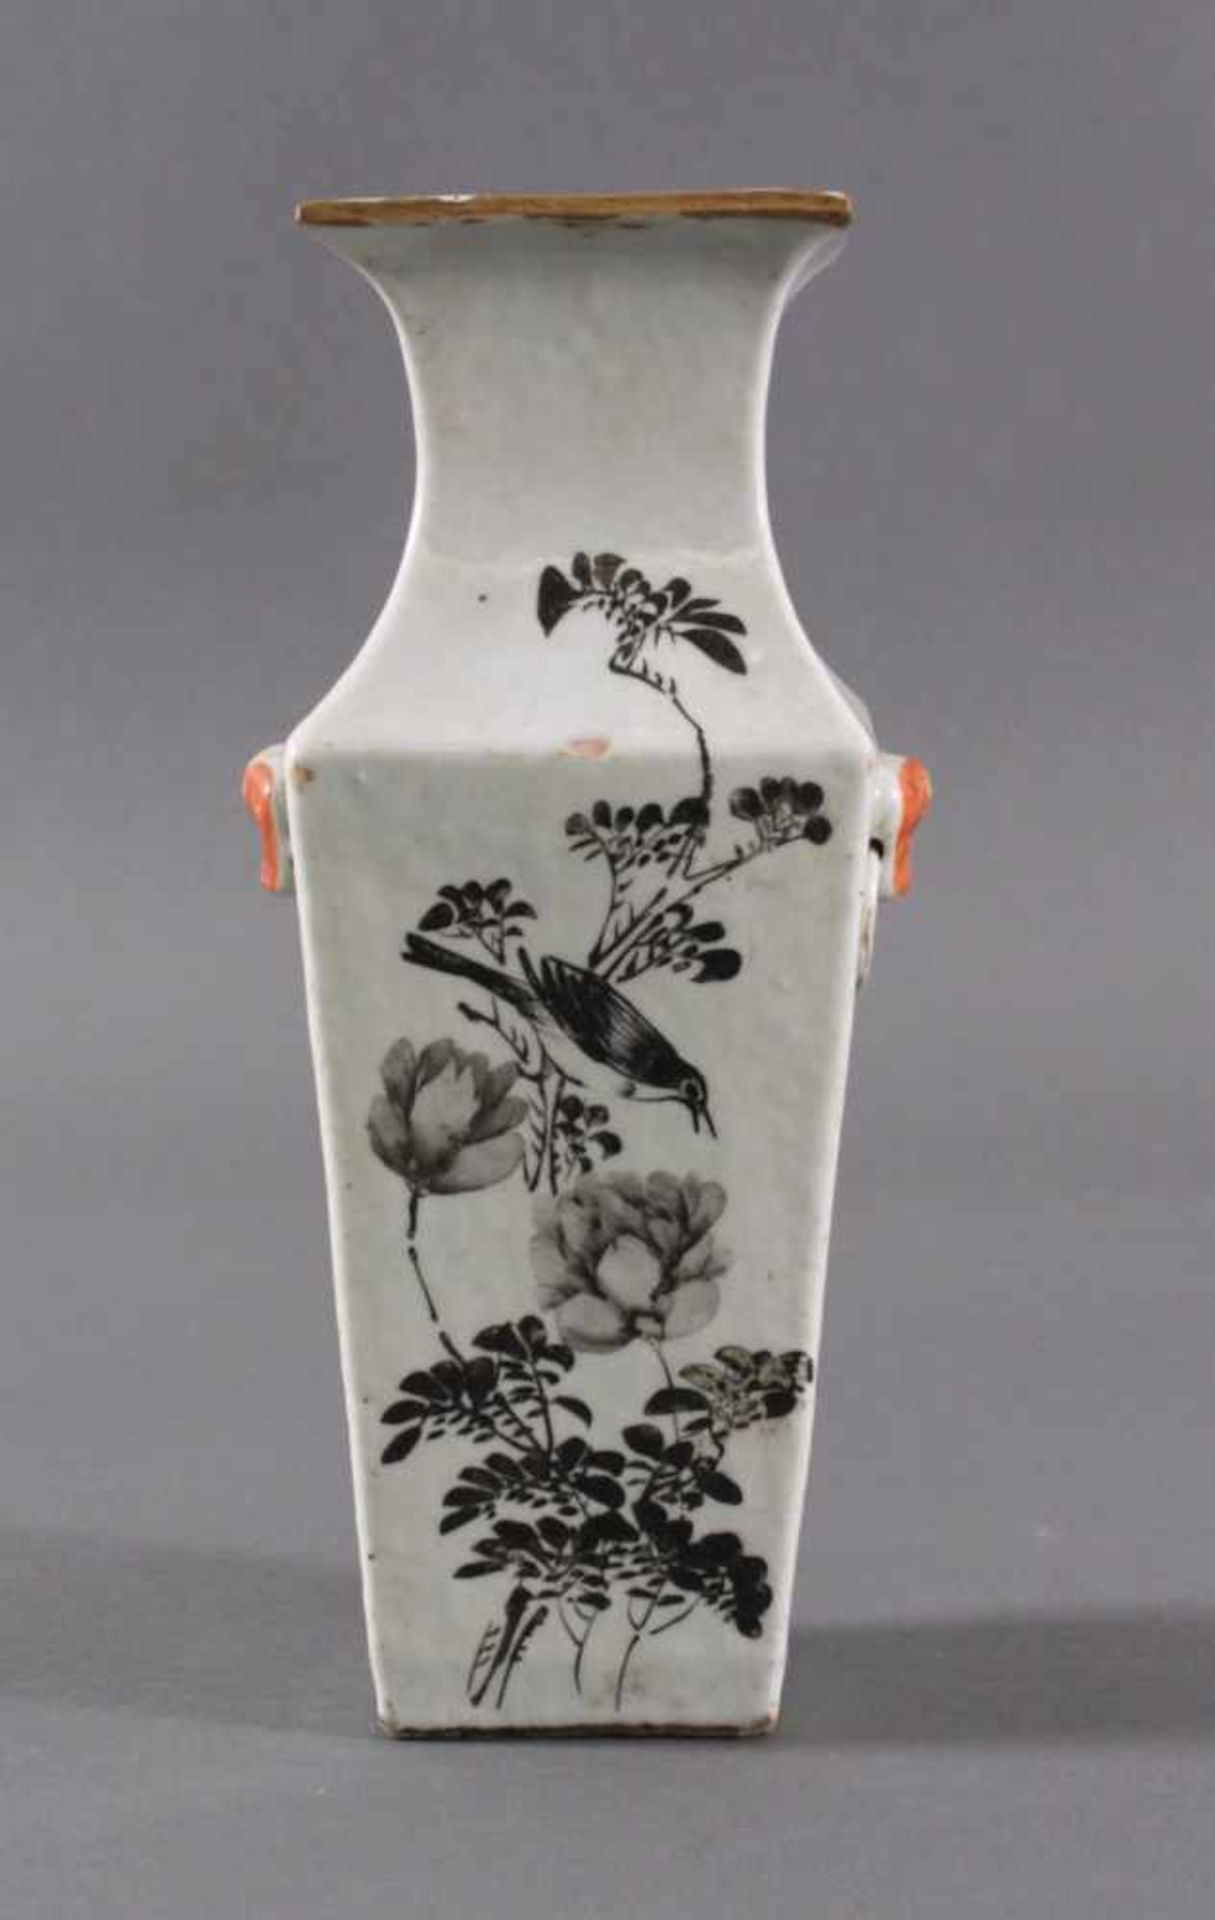 Vase - China 20. Jh.Porzellan, Aufglasurmalerei von Pflanzen- und Vogeldekor.Kalligraphie,